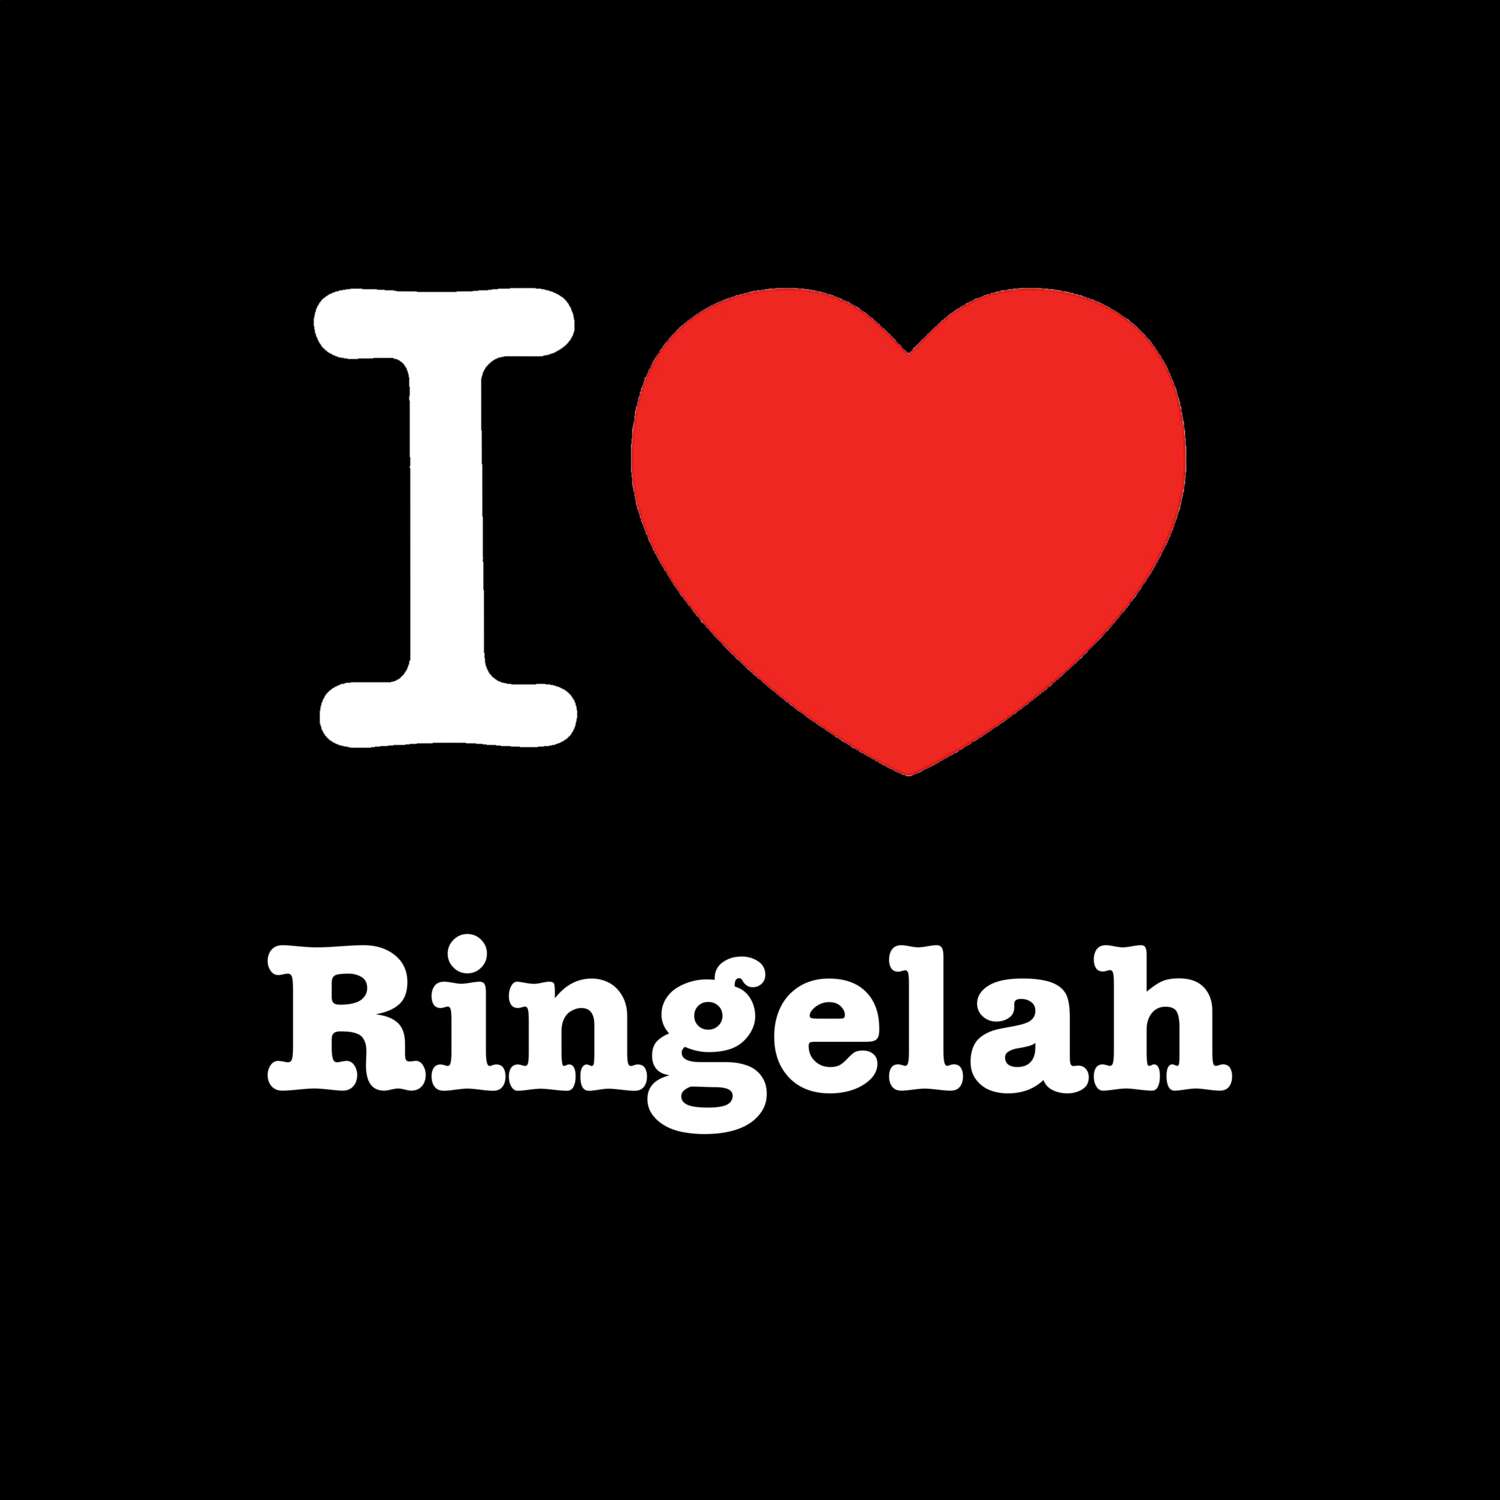 Ringelah T-Shirt »I love«